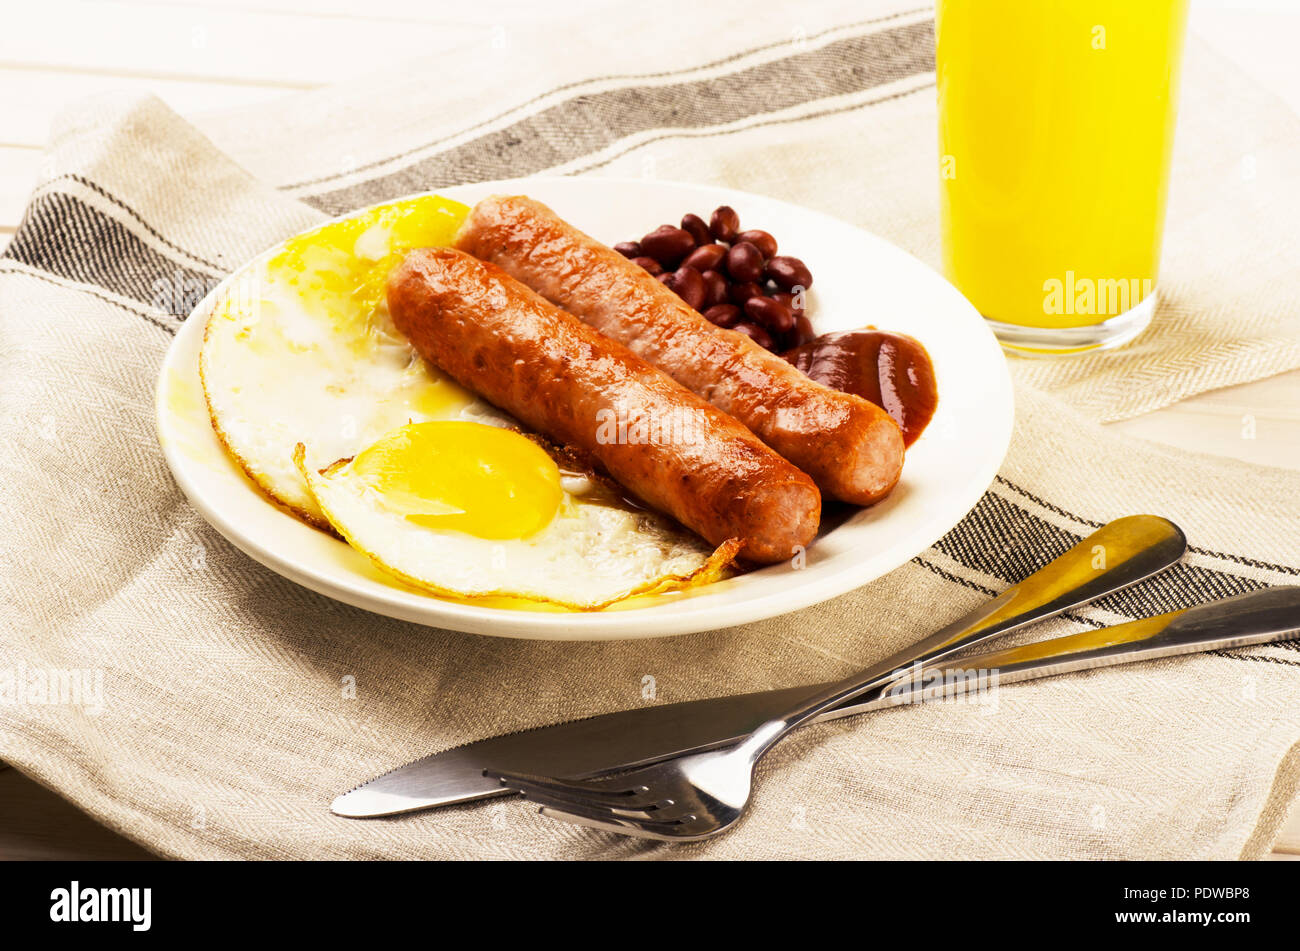 Una deliziosa prima colazione. Servita su un tavolo di legno con uova, salsicce, succo di arancia, coltello, forchetta. Foto Stock